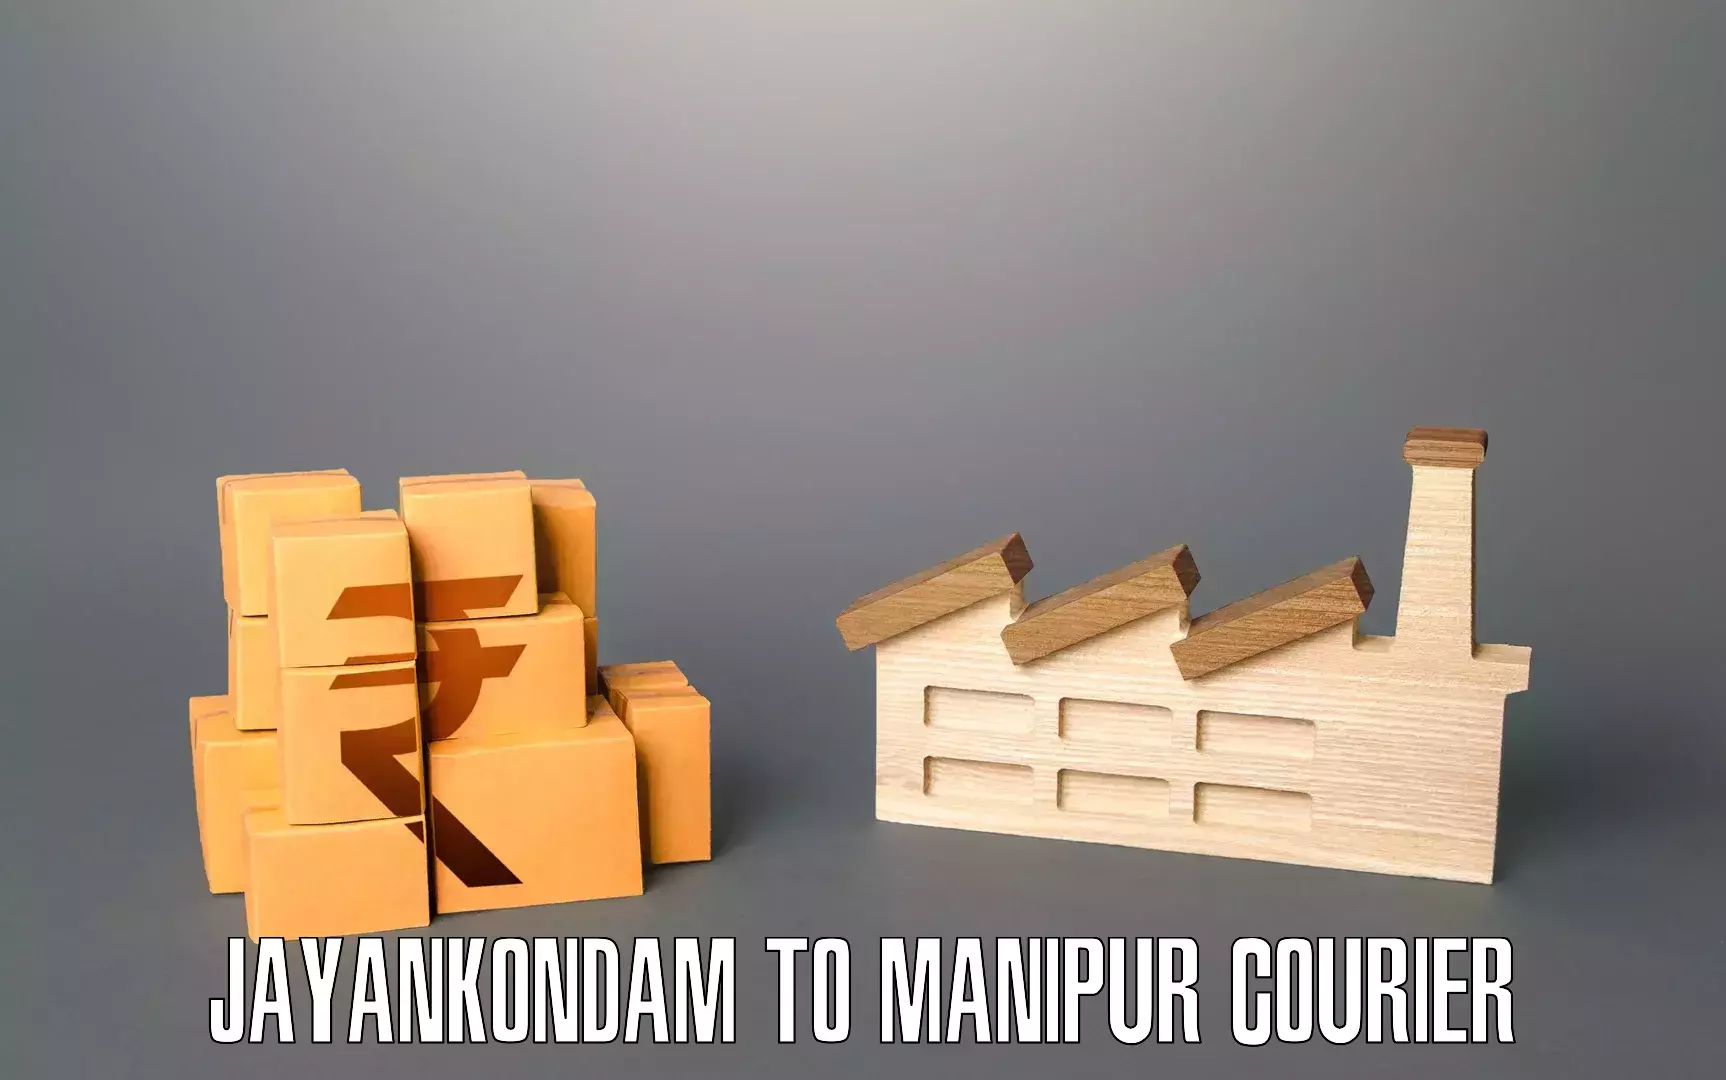 Furniture moving experts Jayankondam to Kakching